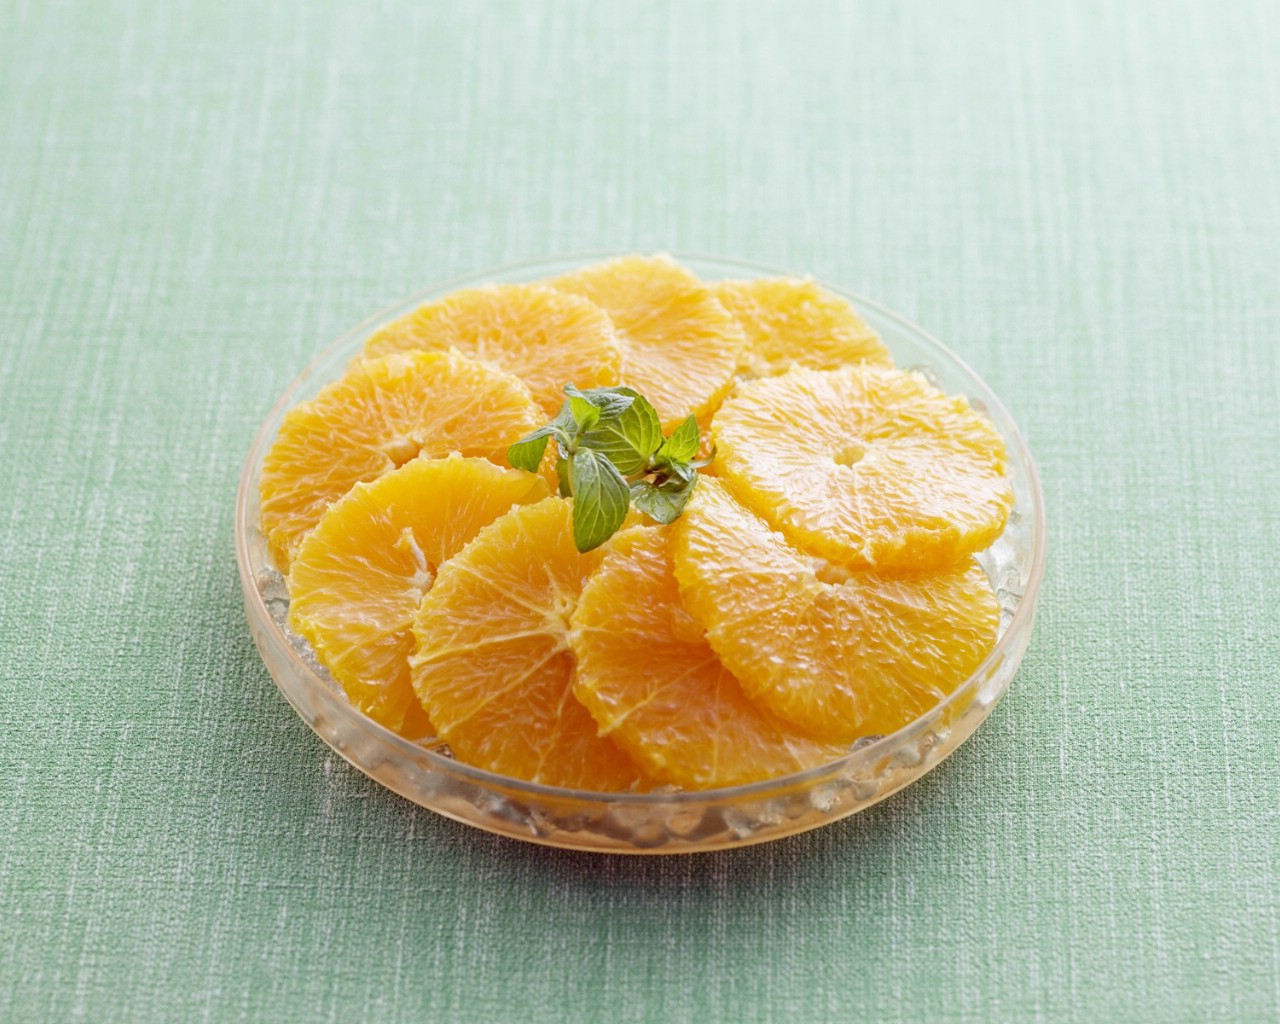 壁纸1280x1024 超漂亮水果甜品 橘子片图片壁纸 餐桌上的水果-水果甜点摄影(一)壁纸 餐桌上的水果-水果甜点摄影(一)图片 餐桌上的水果-水果甜点摄影(一)素材 摄影壁纸 摄影图库 摄影图片素材桌面壁纸